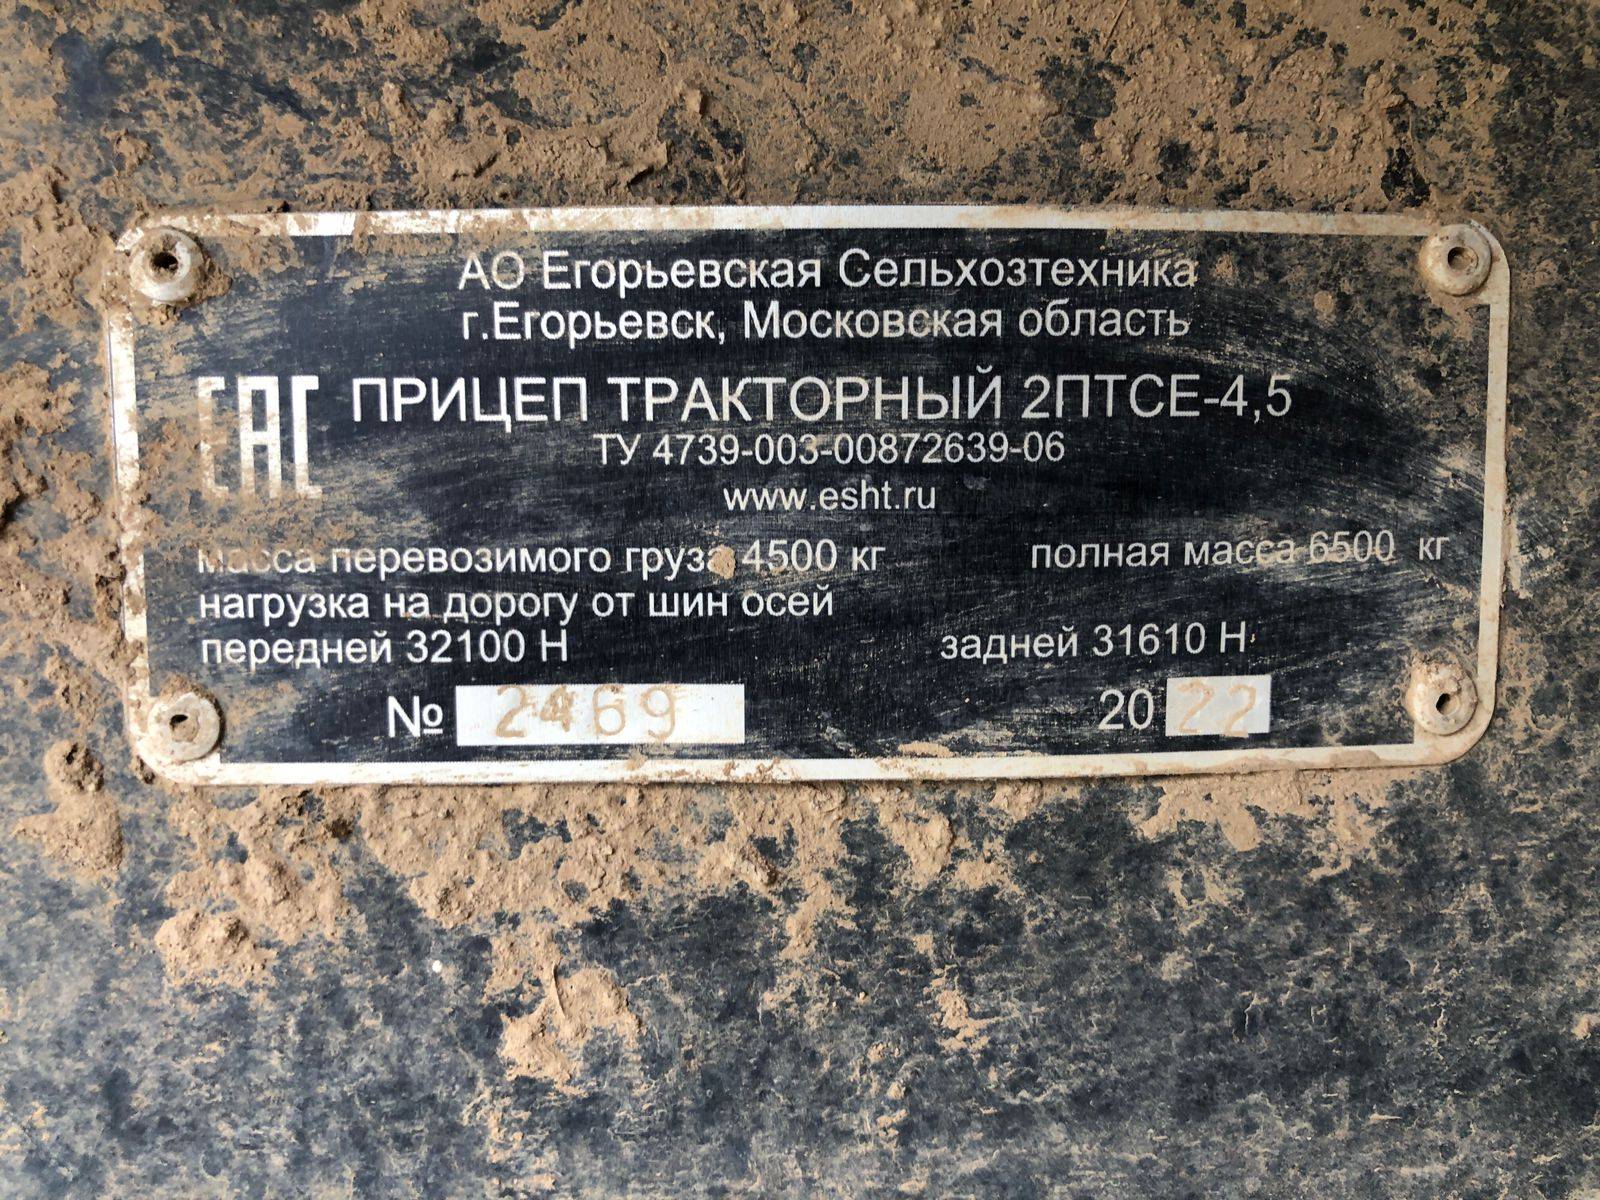 Егорьевская сельхозтехника 2ПТСЕ-4.5 прицеп тракторный самосвальный Лот 000001209